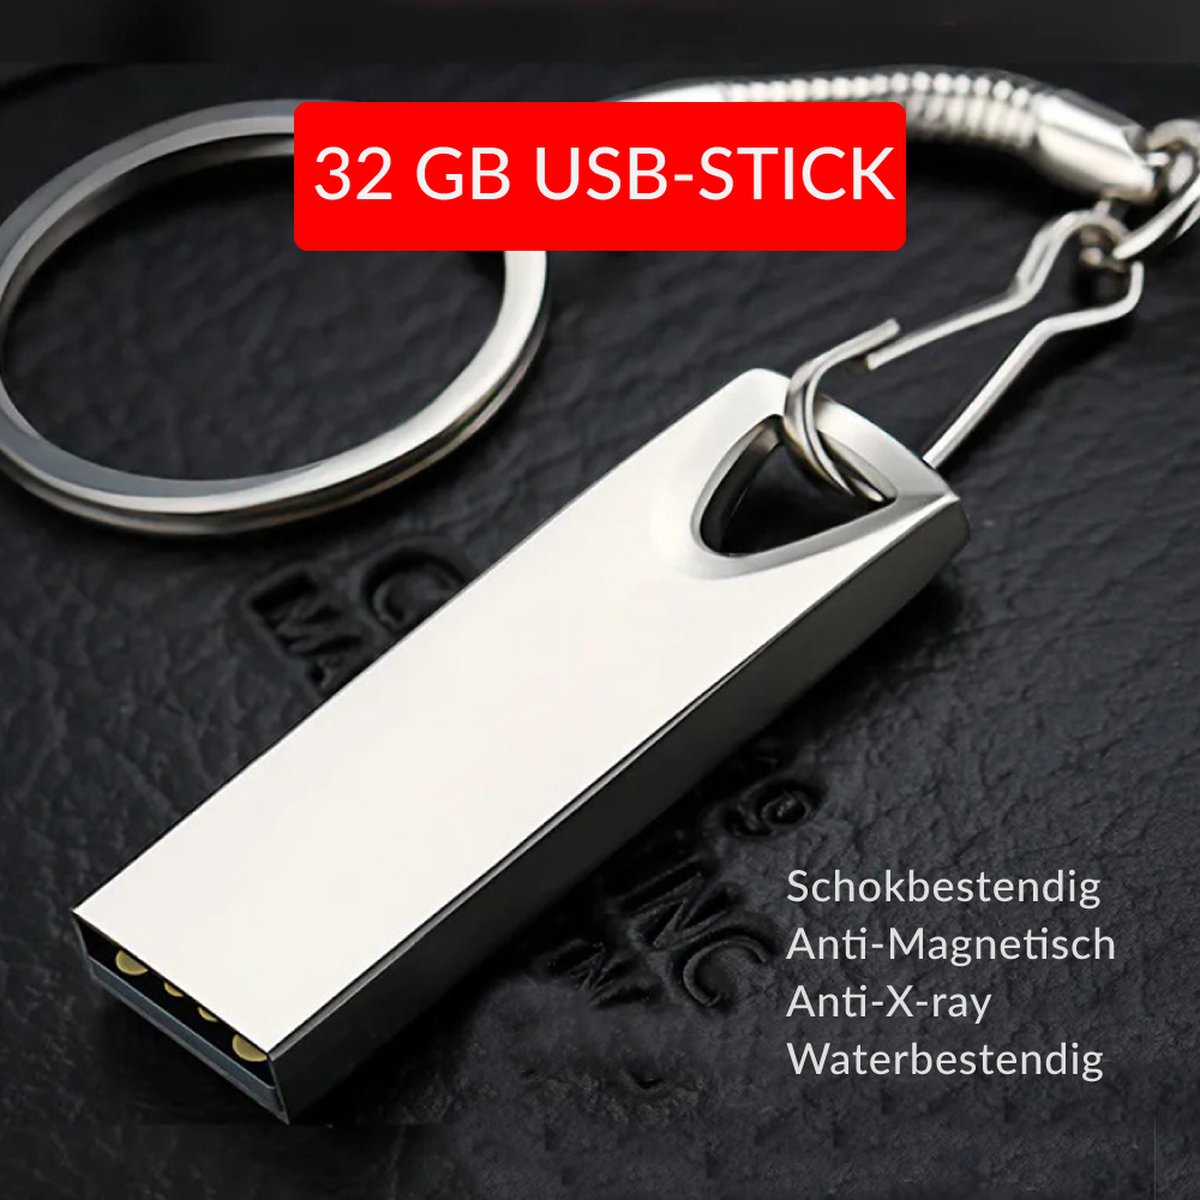 USB-Stick 32GB Metal | 4cm bij 2cm | USB 2.0 | Robuust Metalen Legering | Ziet er stijlvol uit | Makkelijk aan een sleutelbos vast te maken | 1 Jaar Garantie